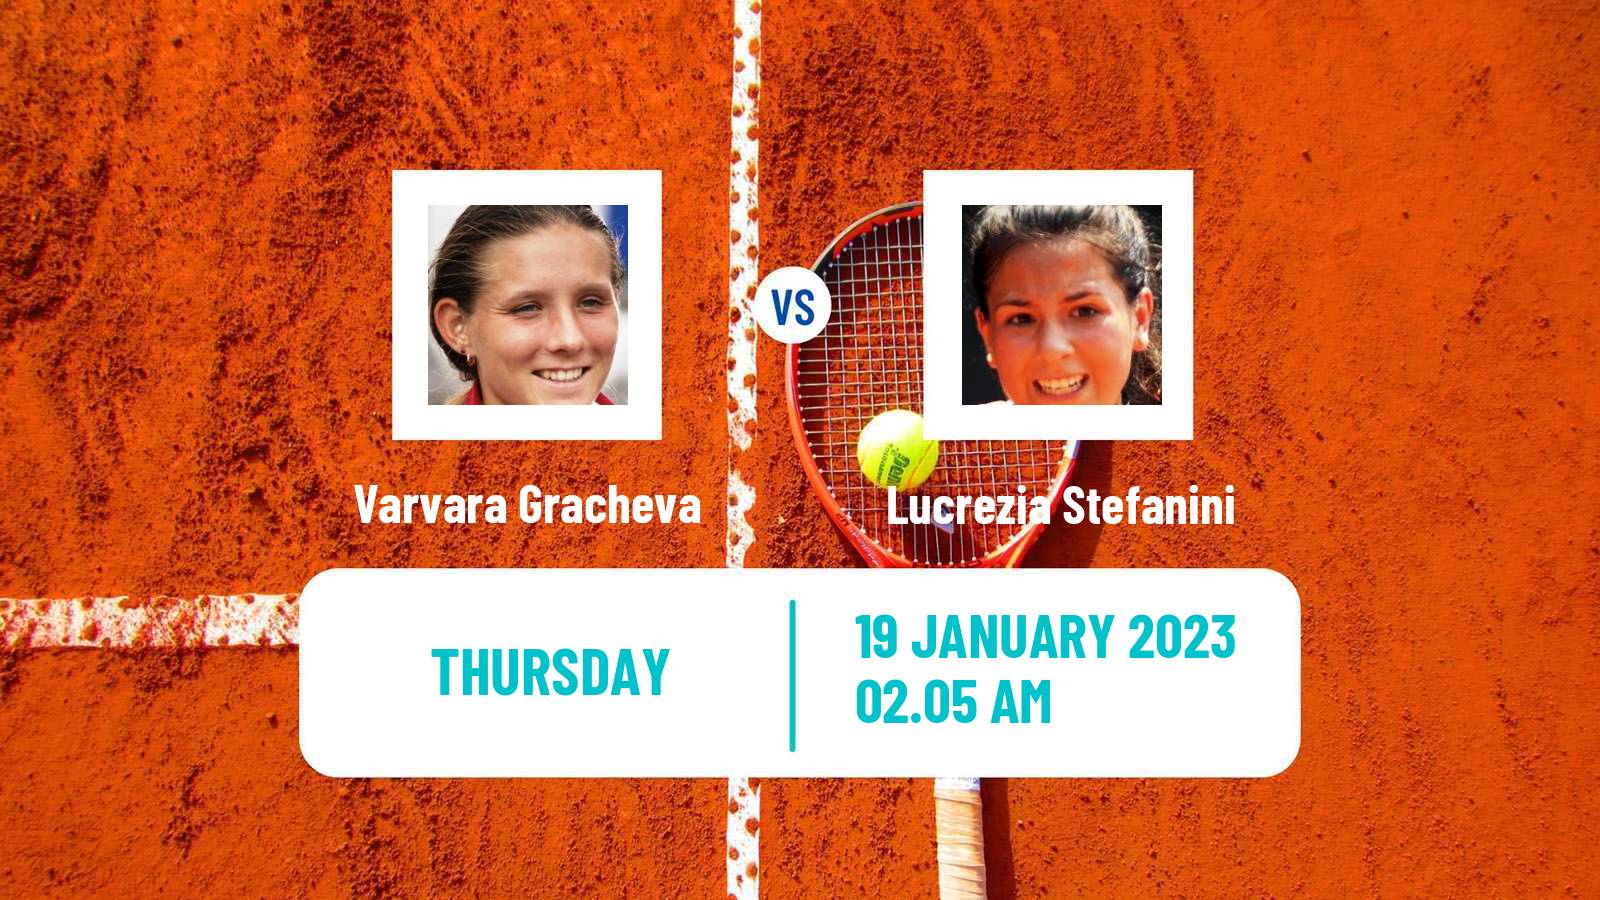 Tennis WTA Australian Open Varvara Gracheva - Lucrezia Stefanini